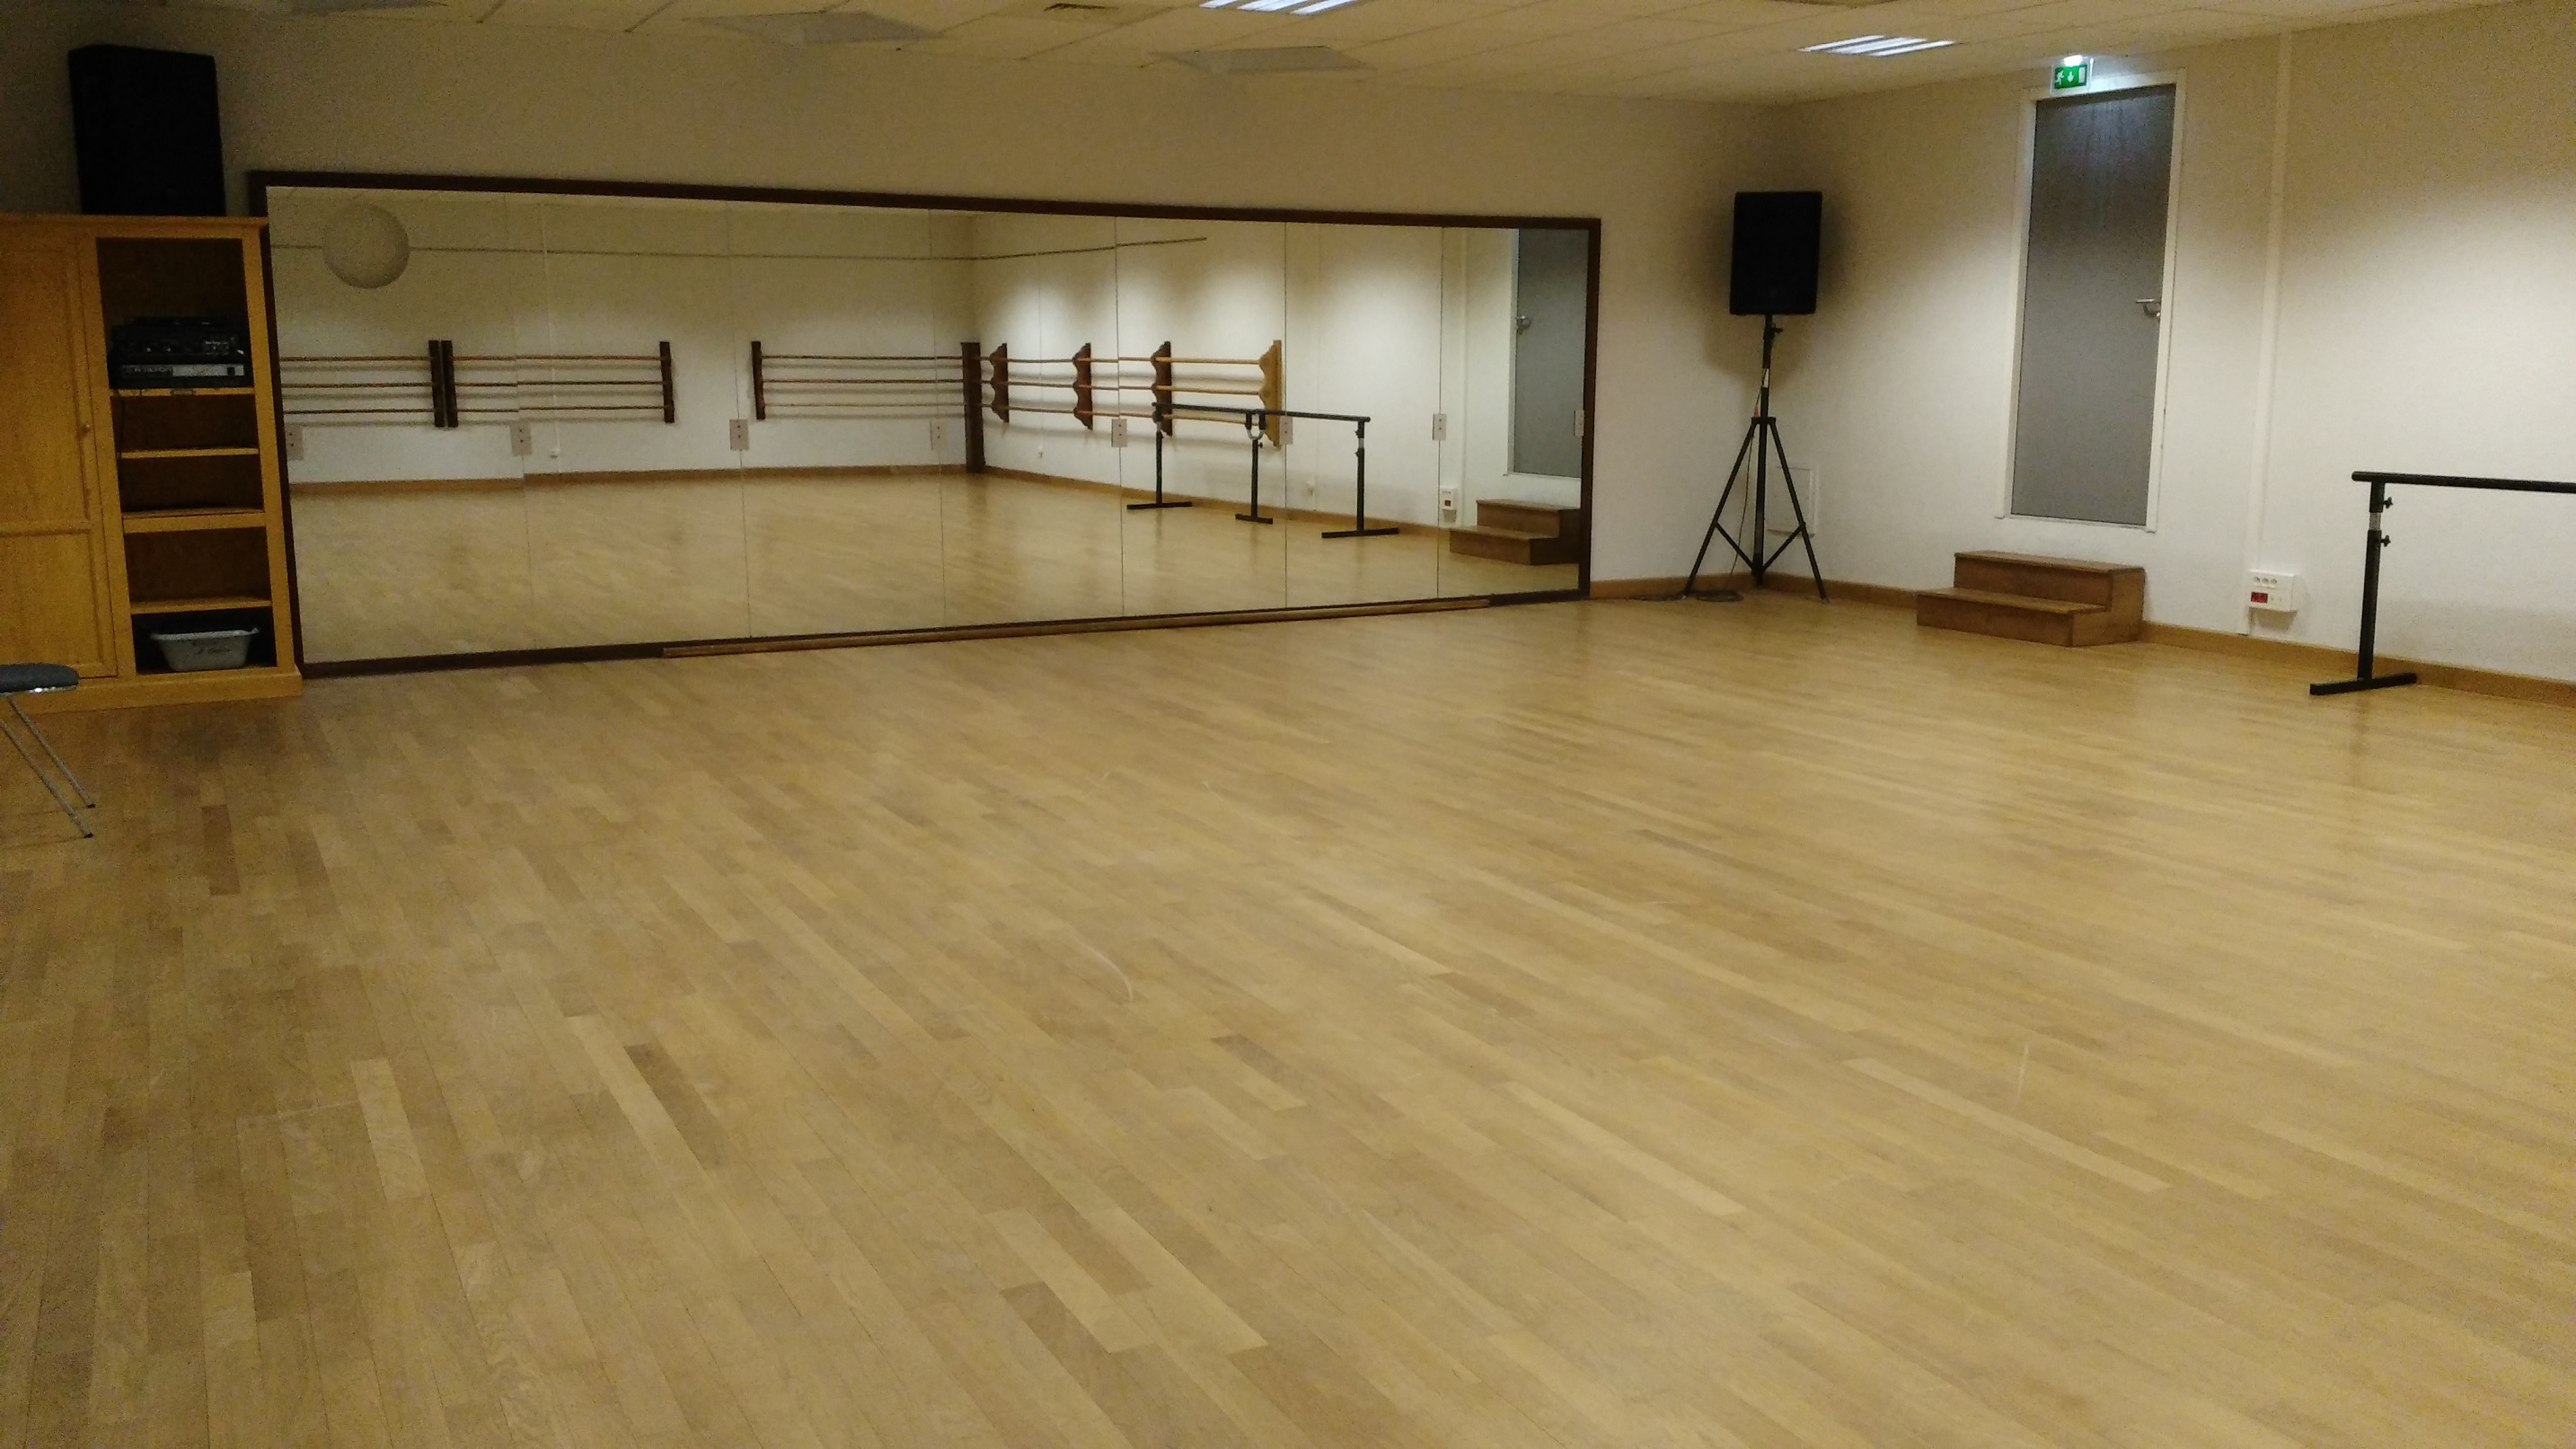  FUN CLUB 35 cours de danse à Rennes Maison des associations 1